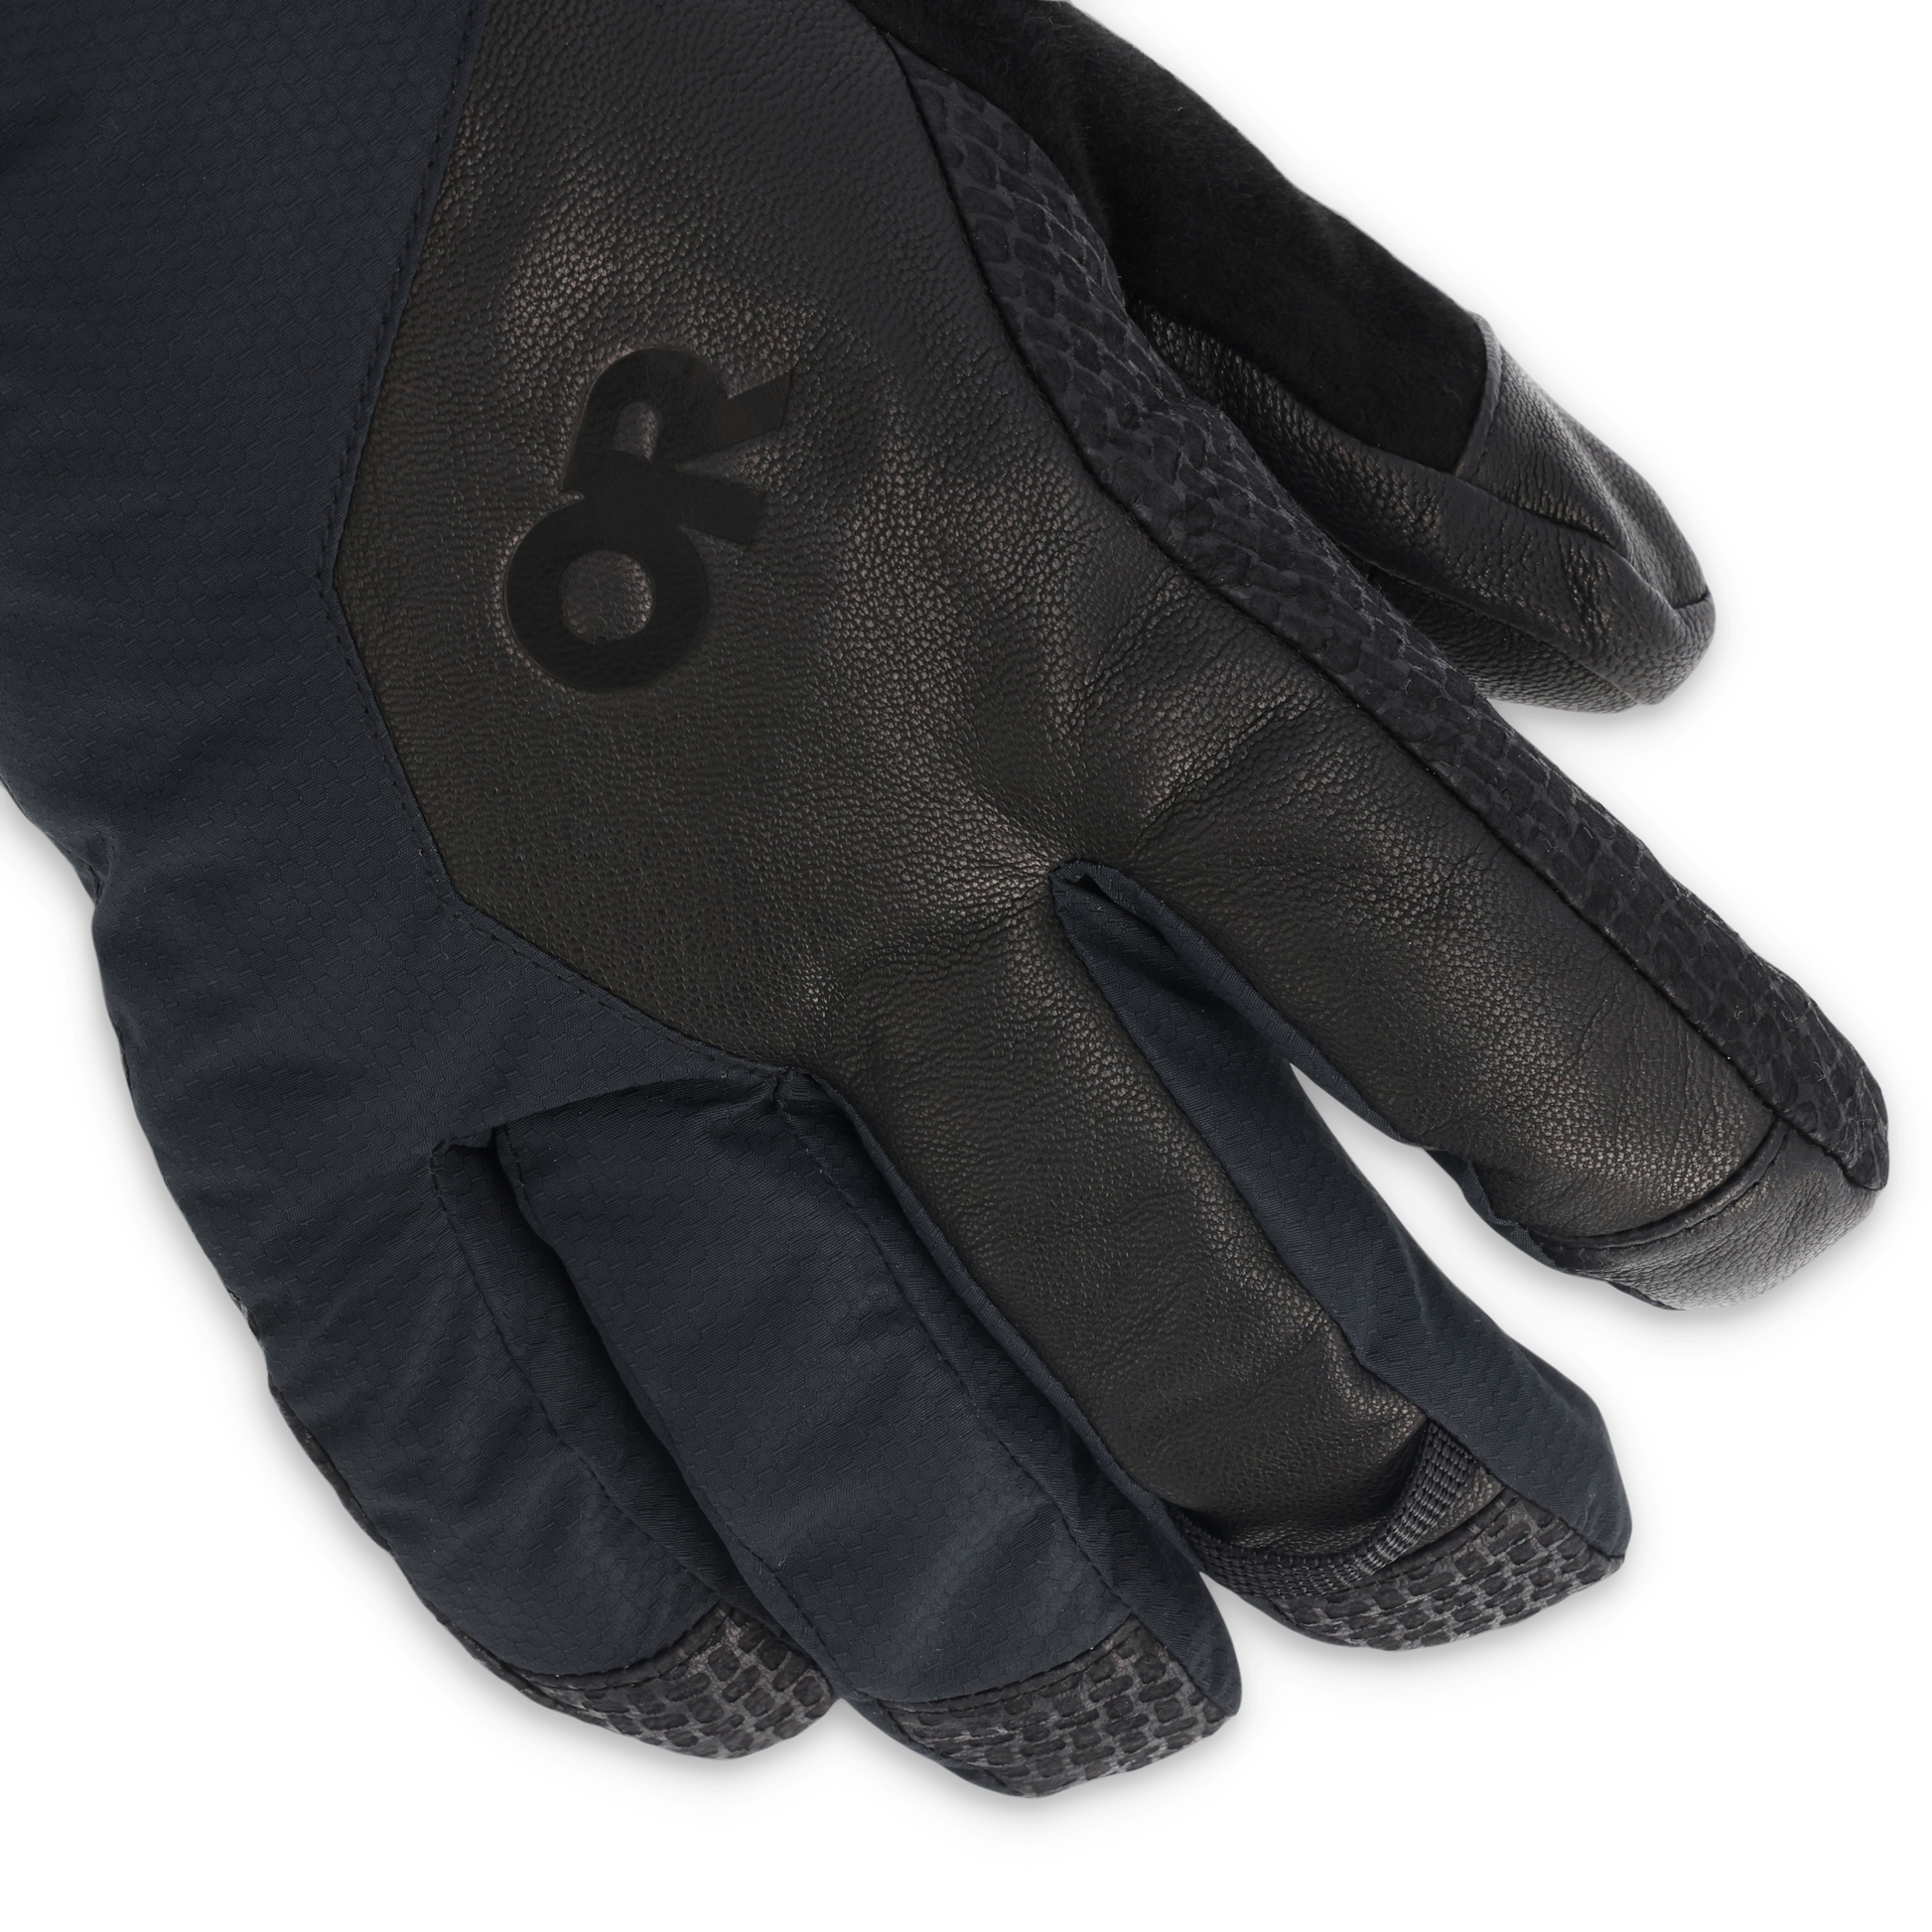 Outdoor Research Men's Gripper Sensor Gloves - Coyote, M